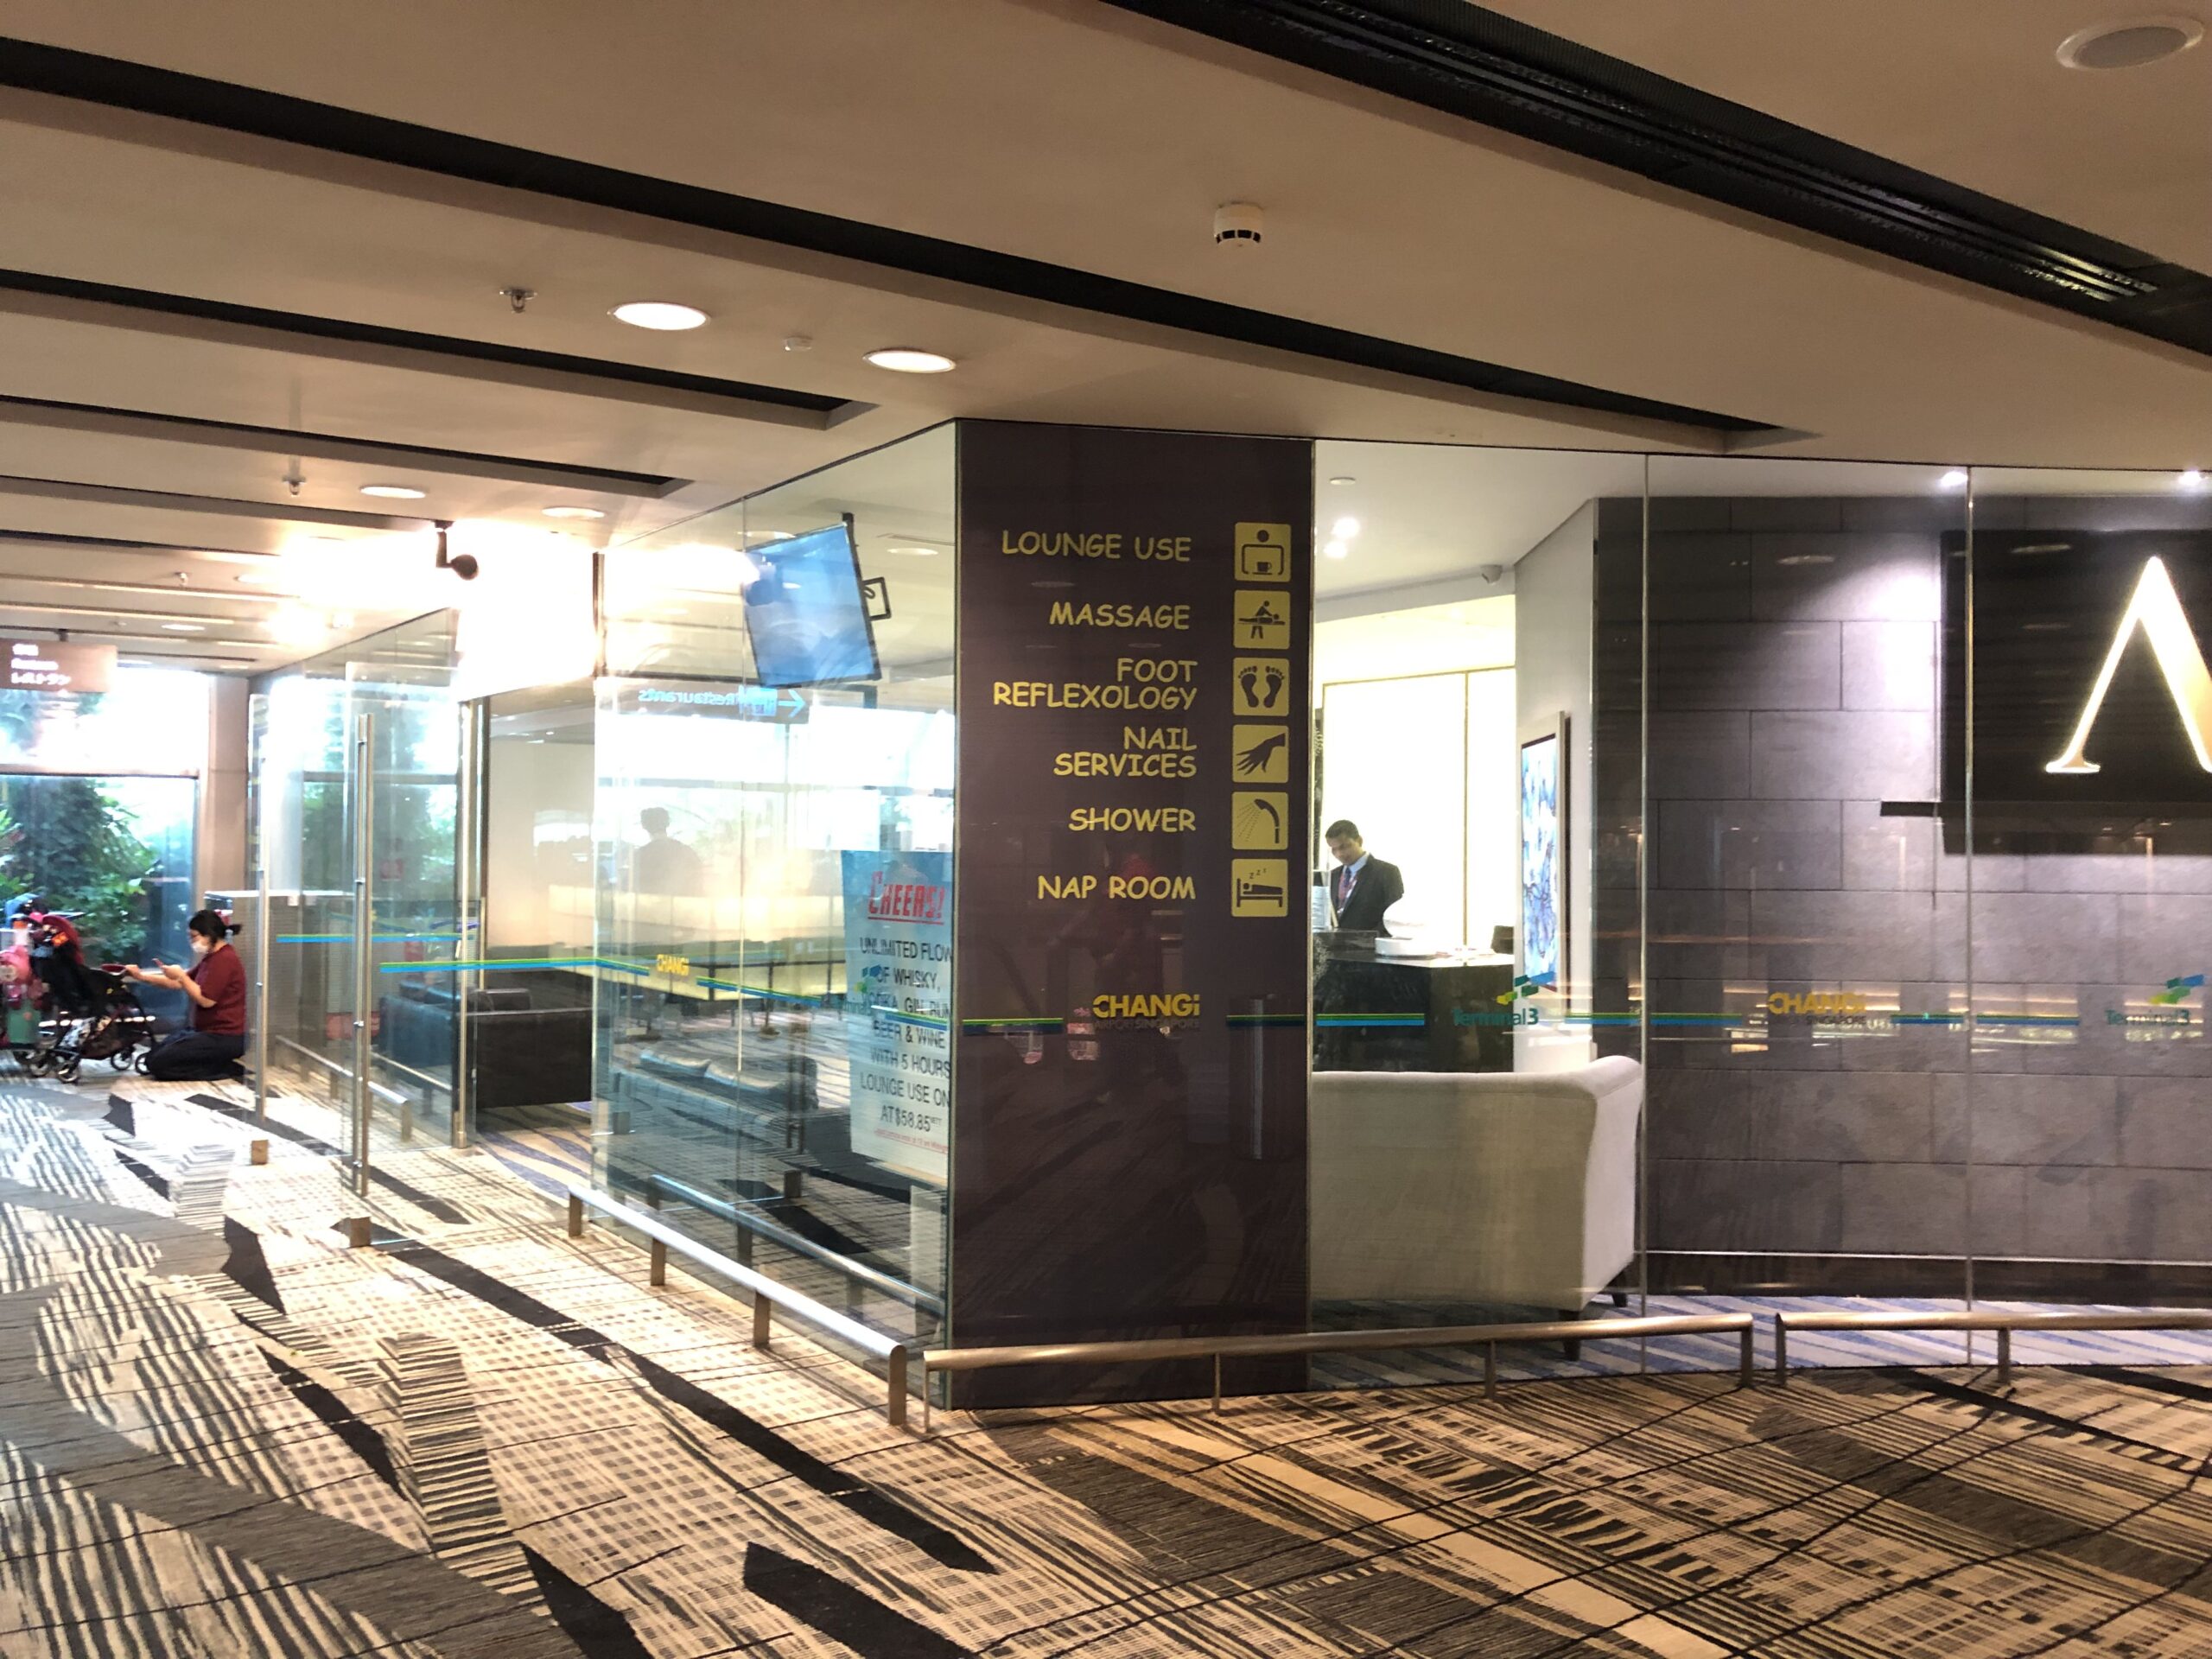 changi airport transit hotel terminal 2 review